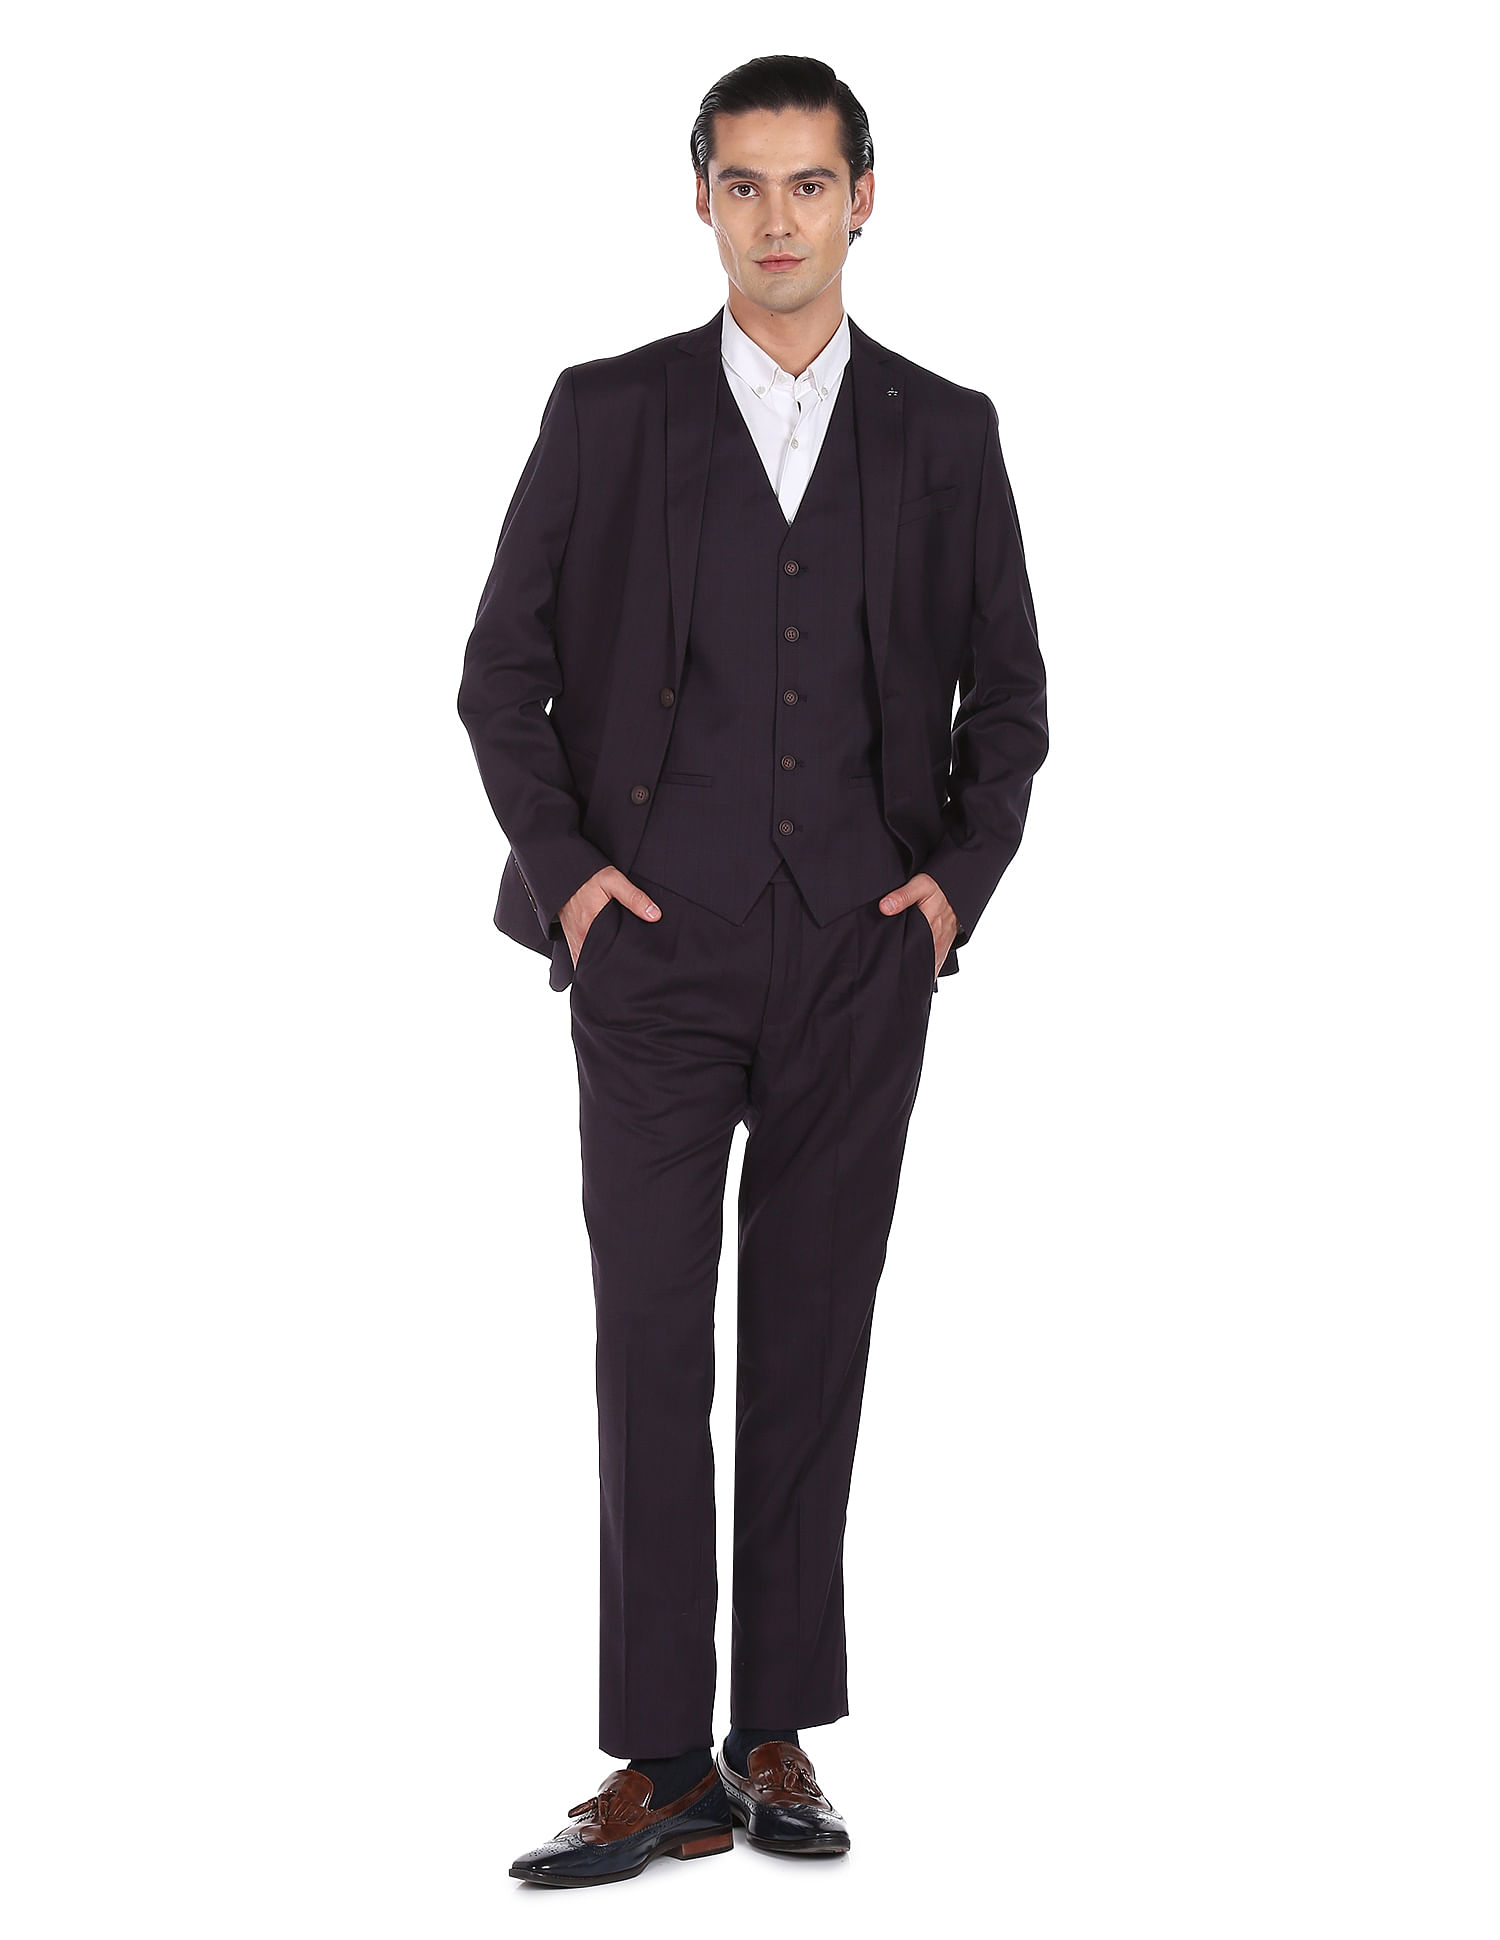 Exquisite Dark Green Double Breasted Men's Suit - Elegant, Tailored Fi –  VARDO